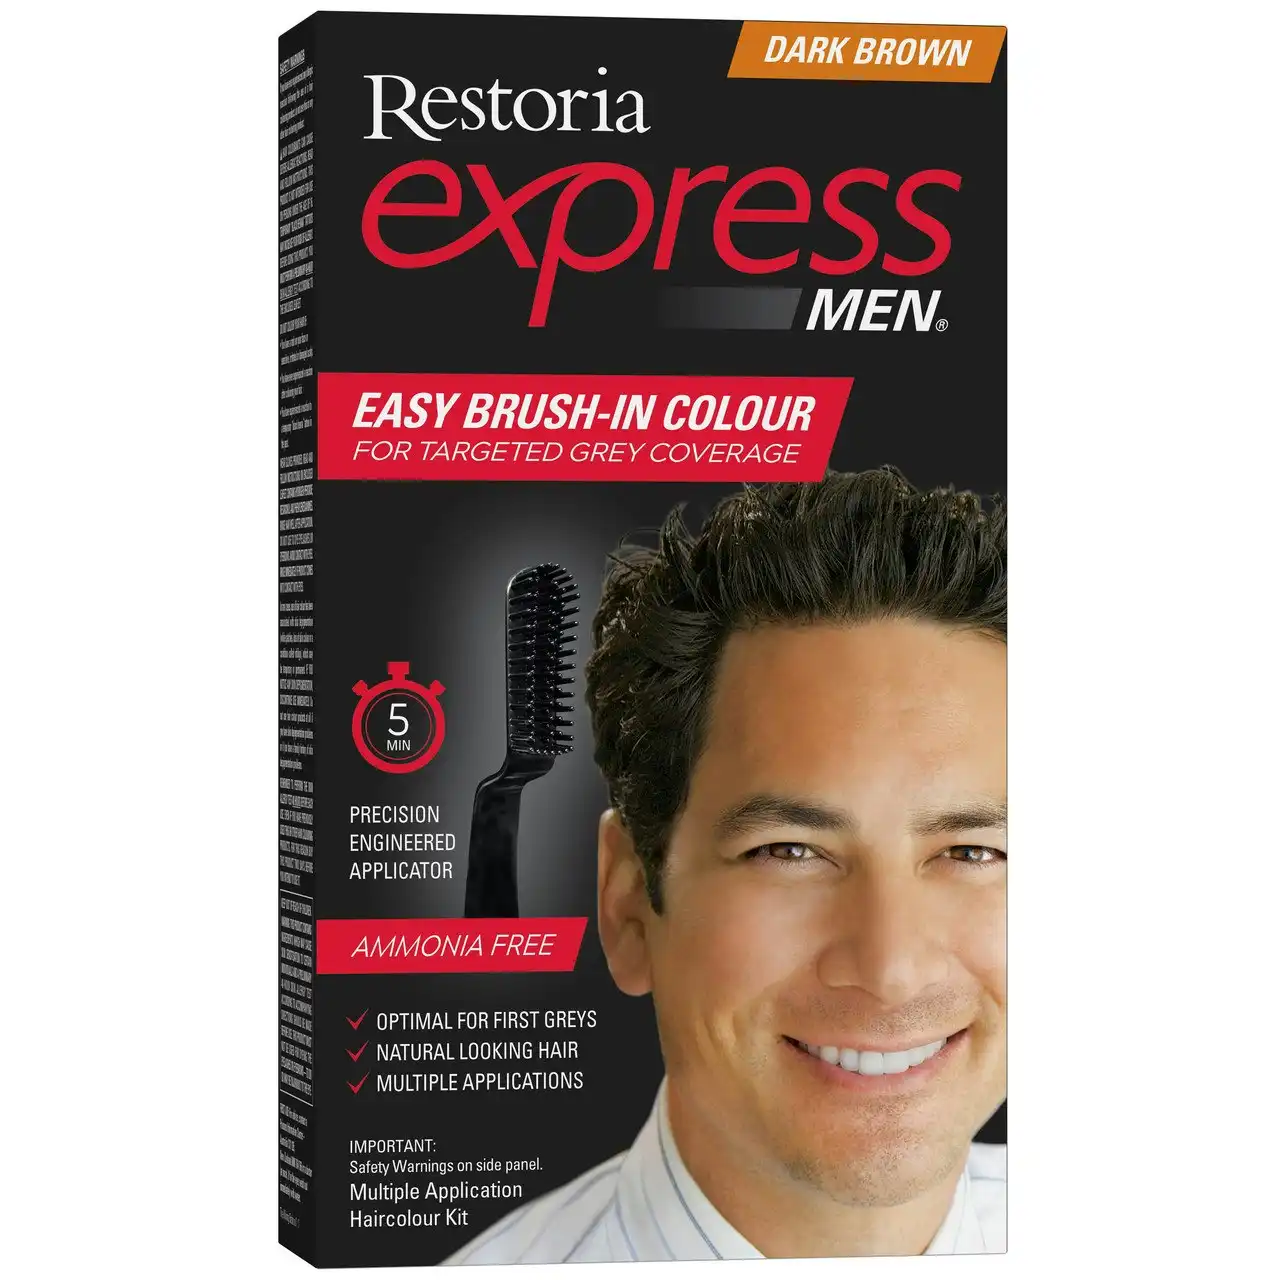 Restoria Express Men Dark Brown